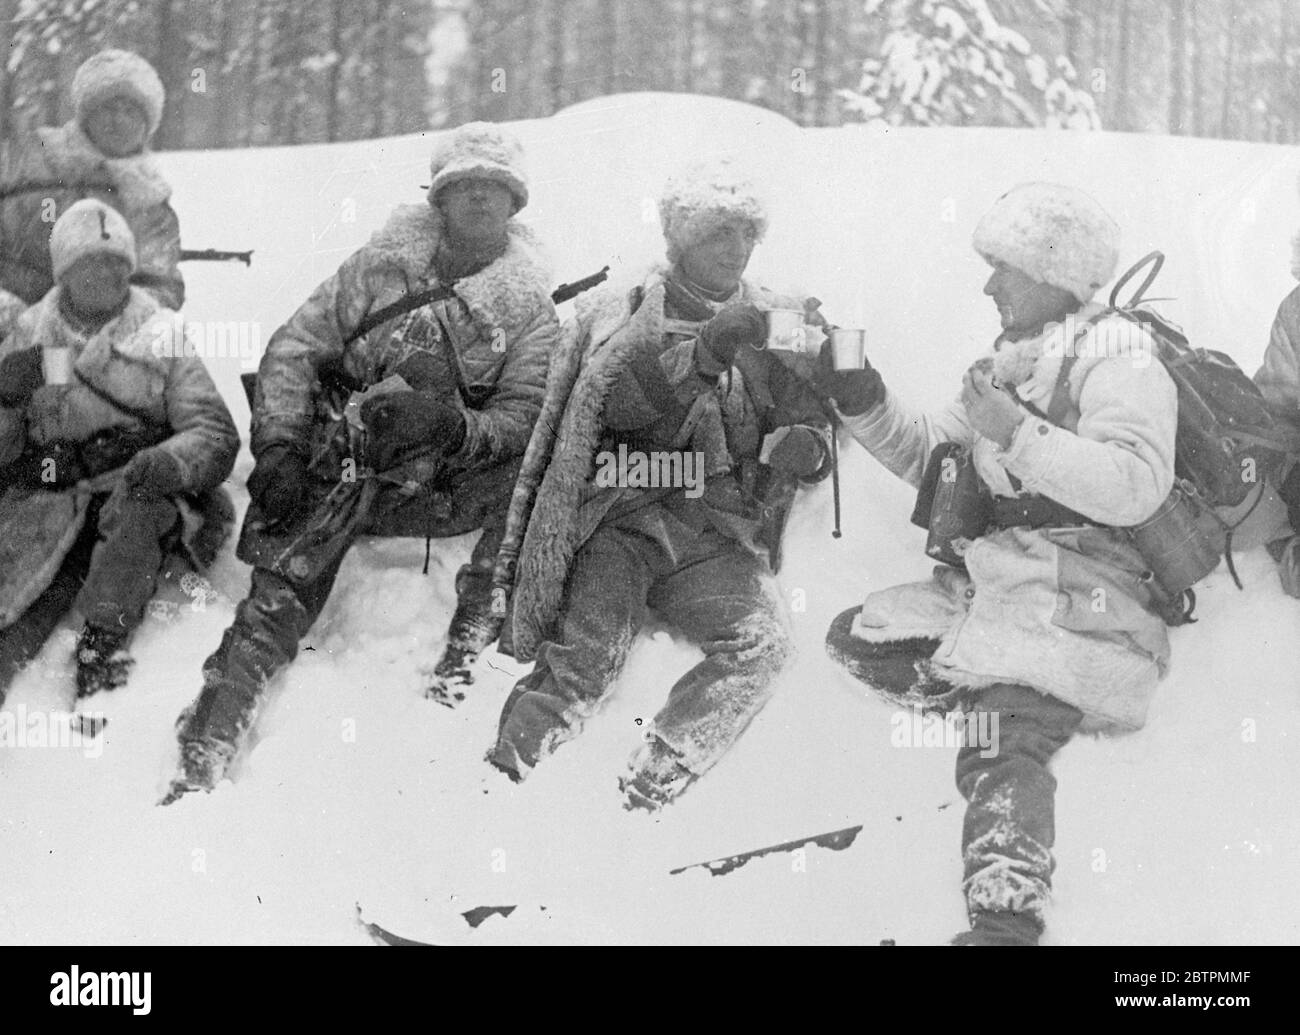 Soldats en fourrures . Armée suédoise sur des manœuvres dans les déchets de neige de laponie . L'armée suédoise est en train d'être testée de manière sévère dans des conditions hivernales difficiles dans le district de Boden en laponie . Les exercices sont suivis par le Prince héritier , Gustav Adolf . Toutes les forces d'infanterie sont équipées de skis et la plupart de l'artillerie de traîneaux . Les fourrures sont l'uniforme prédominant . Photos , soldats suédois en fourrure prenant des boissons chaudes comme ils se reposent dans la neige du champ de bataille à Boden , Laponie . 11 mars 1937 Banque D'Images